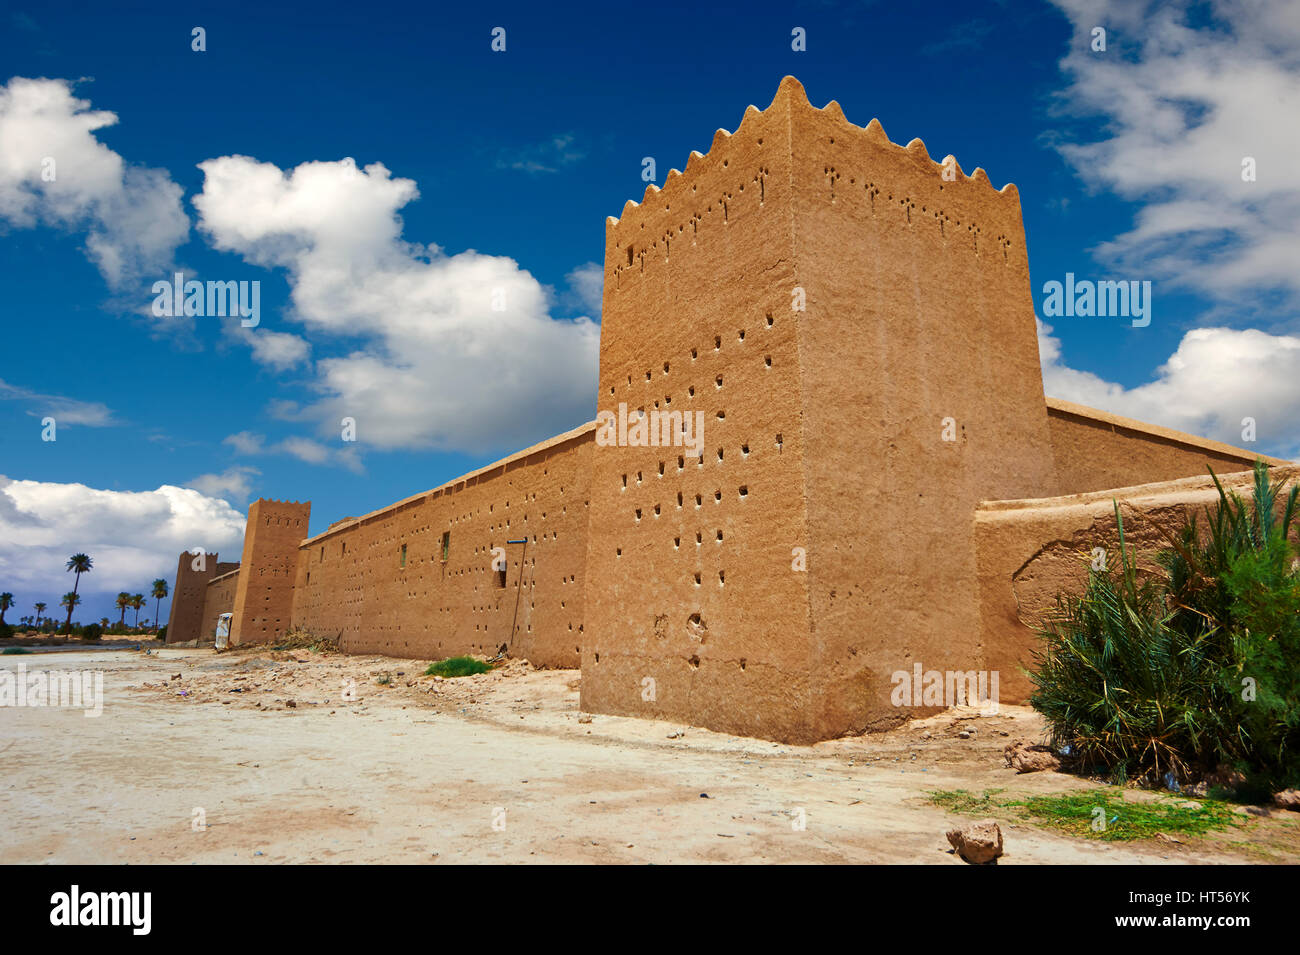 Parete esterna le fortificazioni della Alaouite Ksar Fida costruito da Moulay Ismaïl secondo dominatore del marocchino dinastia Alaouite ( regnò 1672-1727 ). R Foto Stock